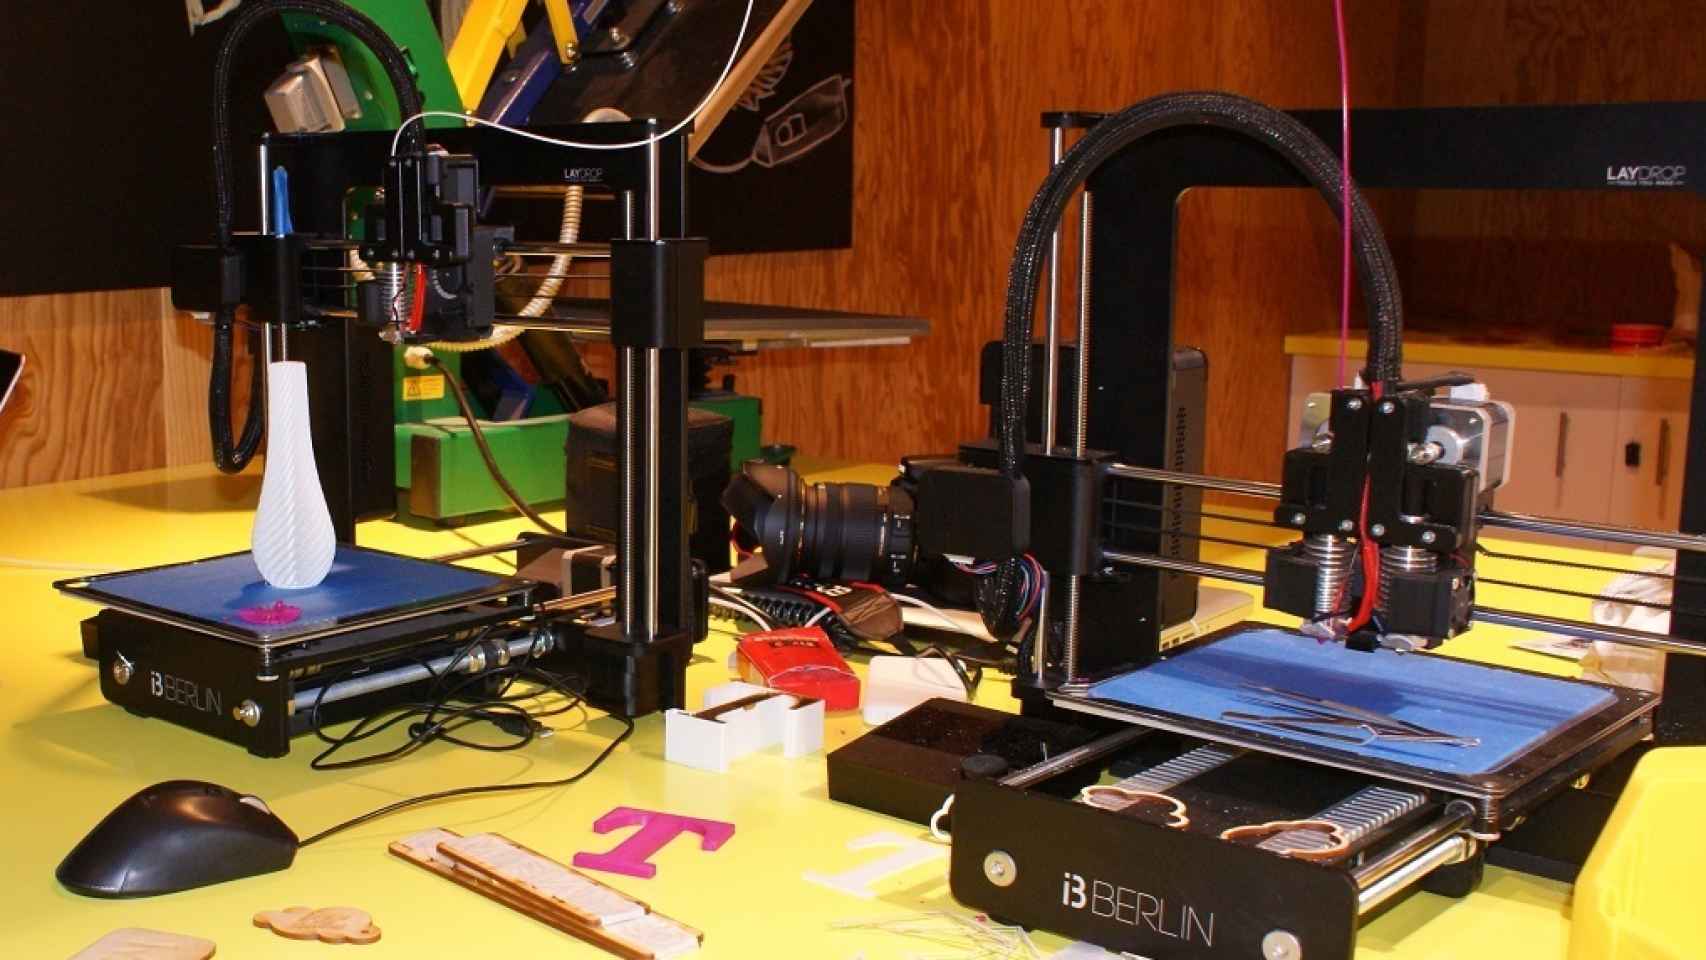 Todos a imprimir en 3D, aunque no sepamos qué.